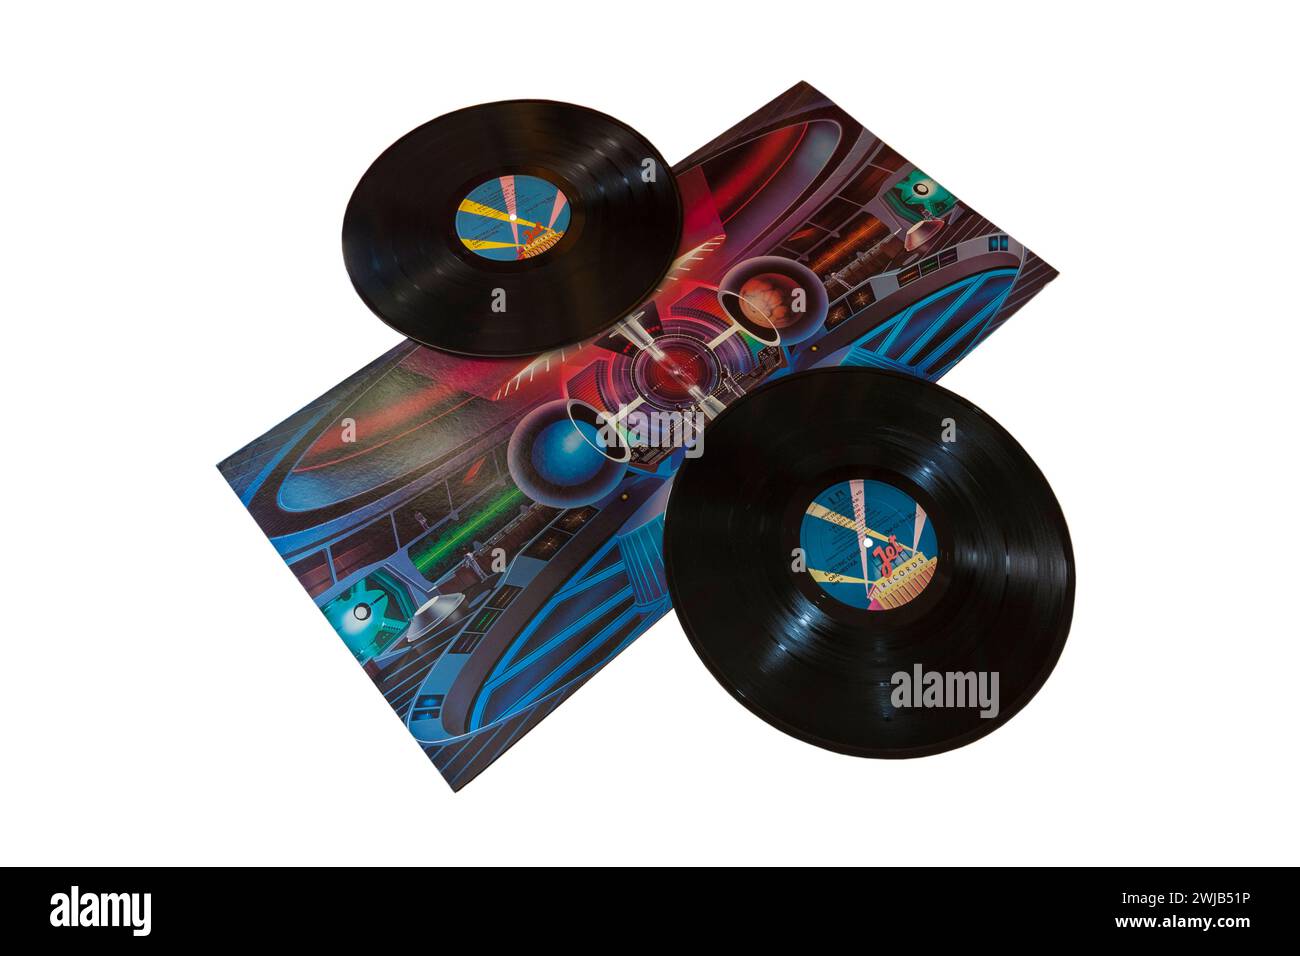 Electric Light Orchestra ELO Out of the Blue vinyle album LP couverture isolée sur fond blanc - 1977 Banque D'Images